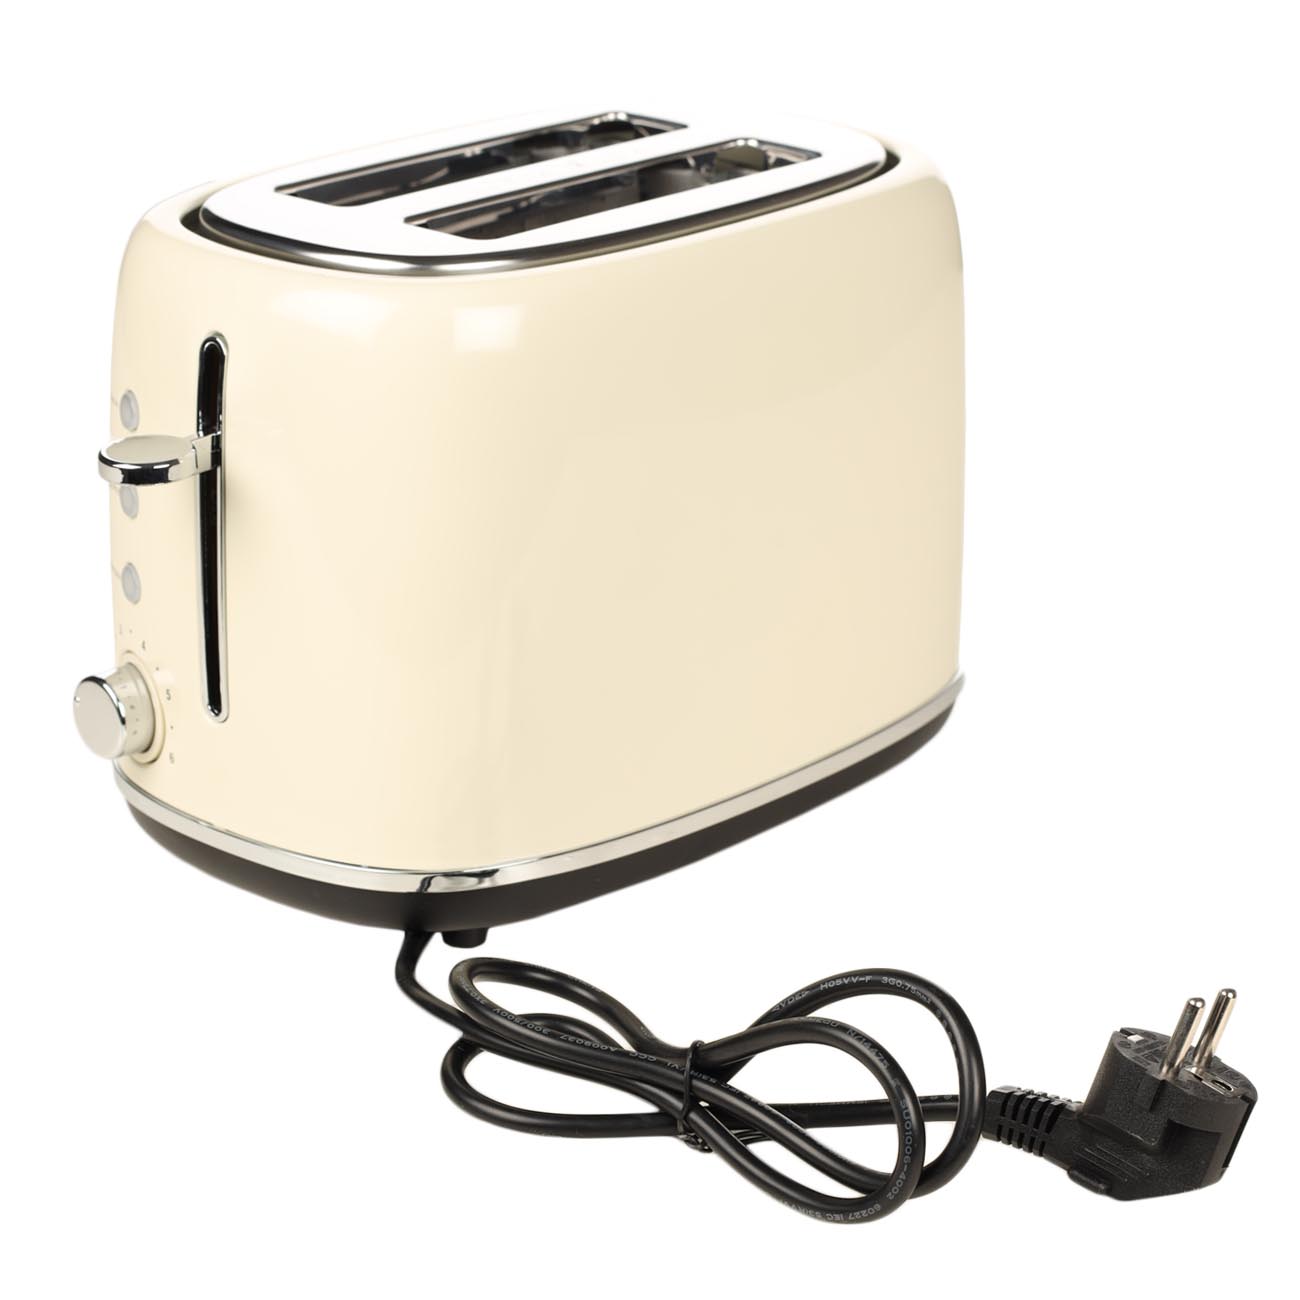 Тостер электр, 730-870 Вт, 6 режим, болат / пластик, бежевый, Vintage kitchen изображение № 5